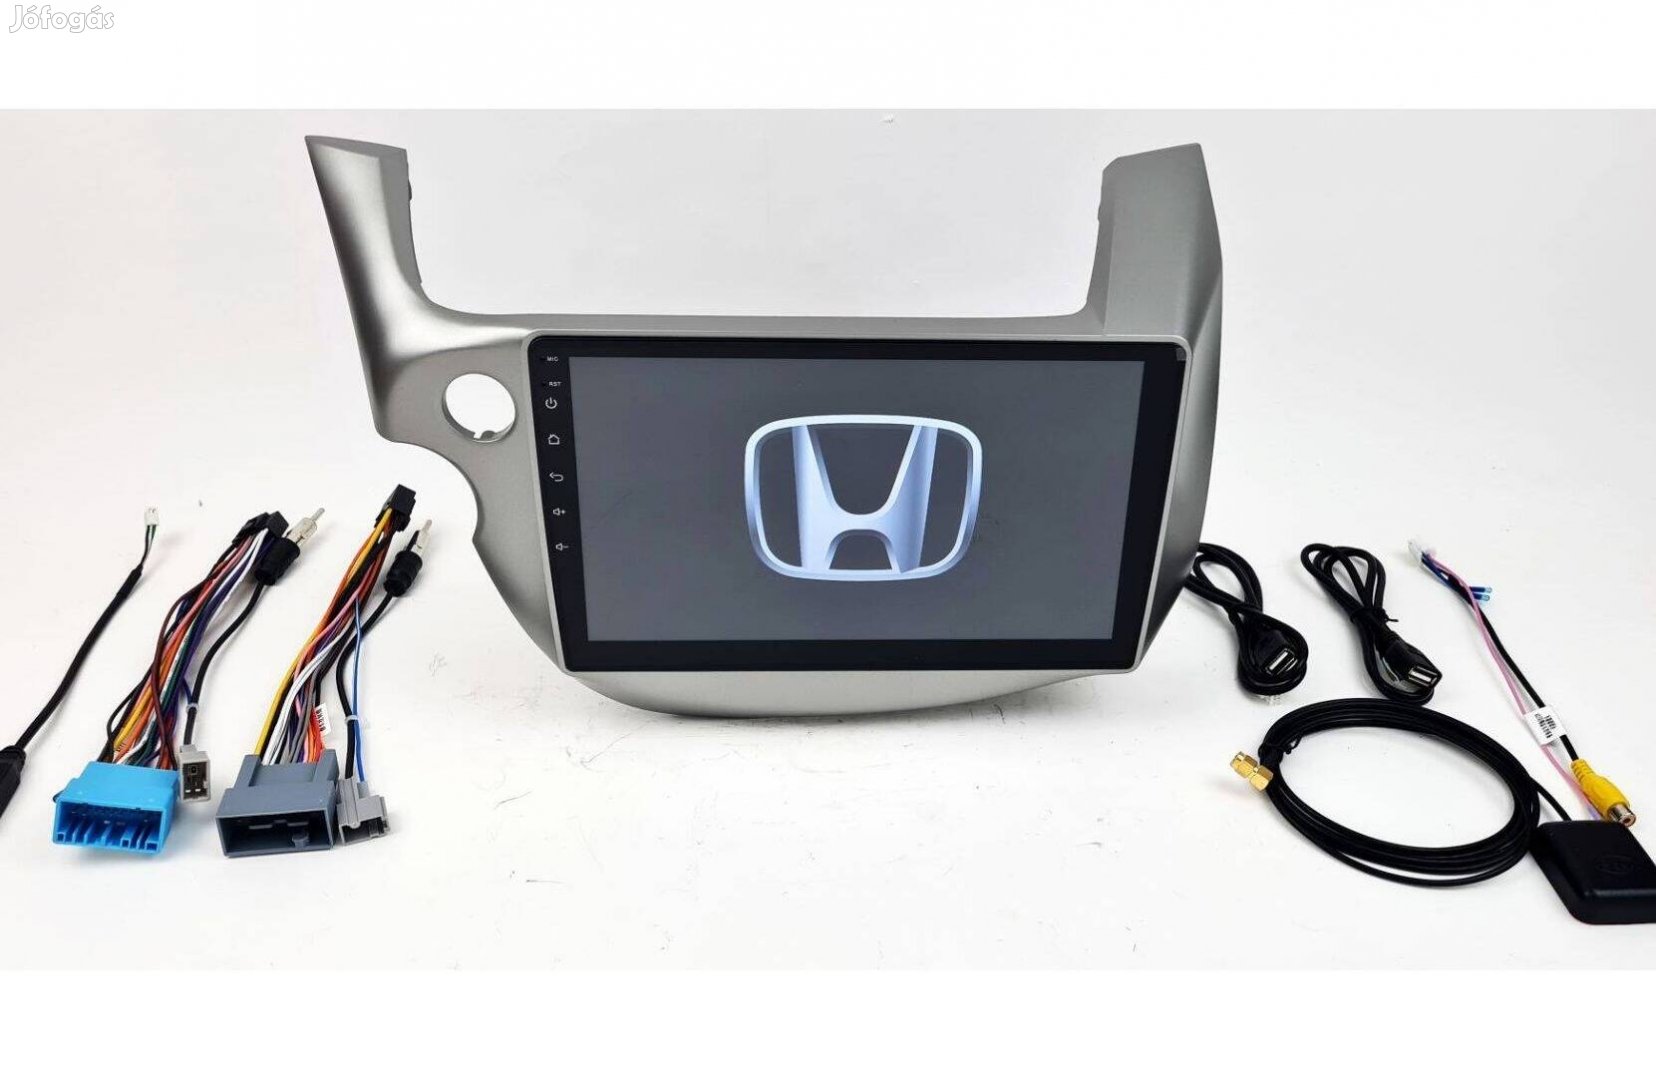 Honda Jazz Android autórádió navi fejegység gyári helyre 1-4GB Carplay